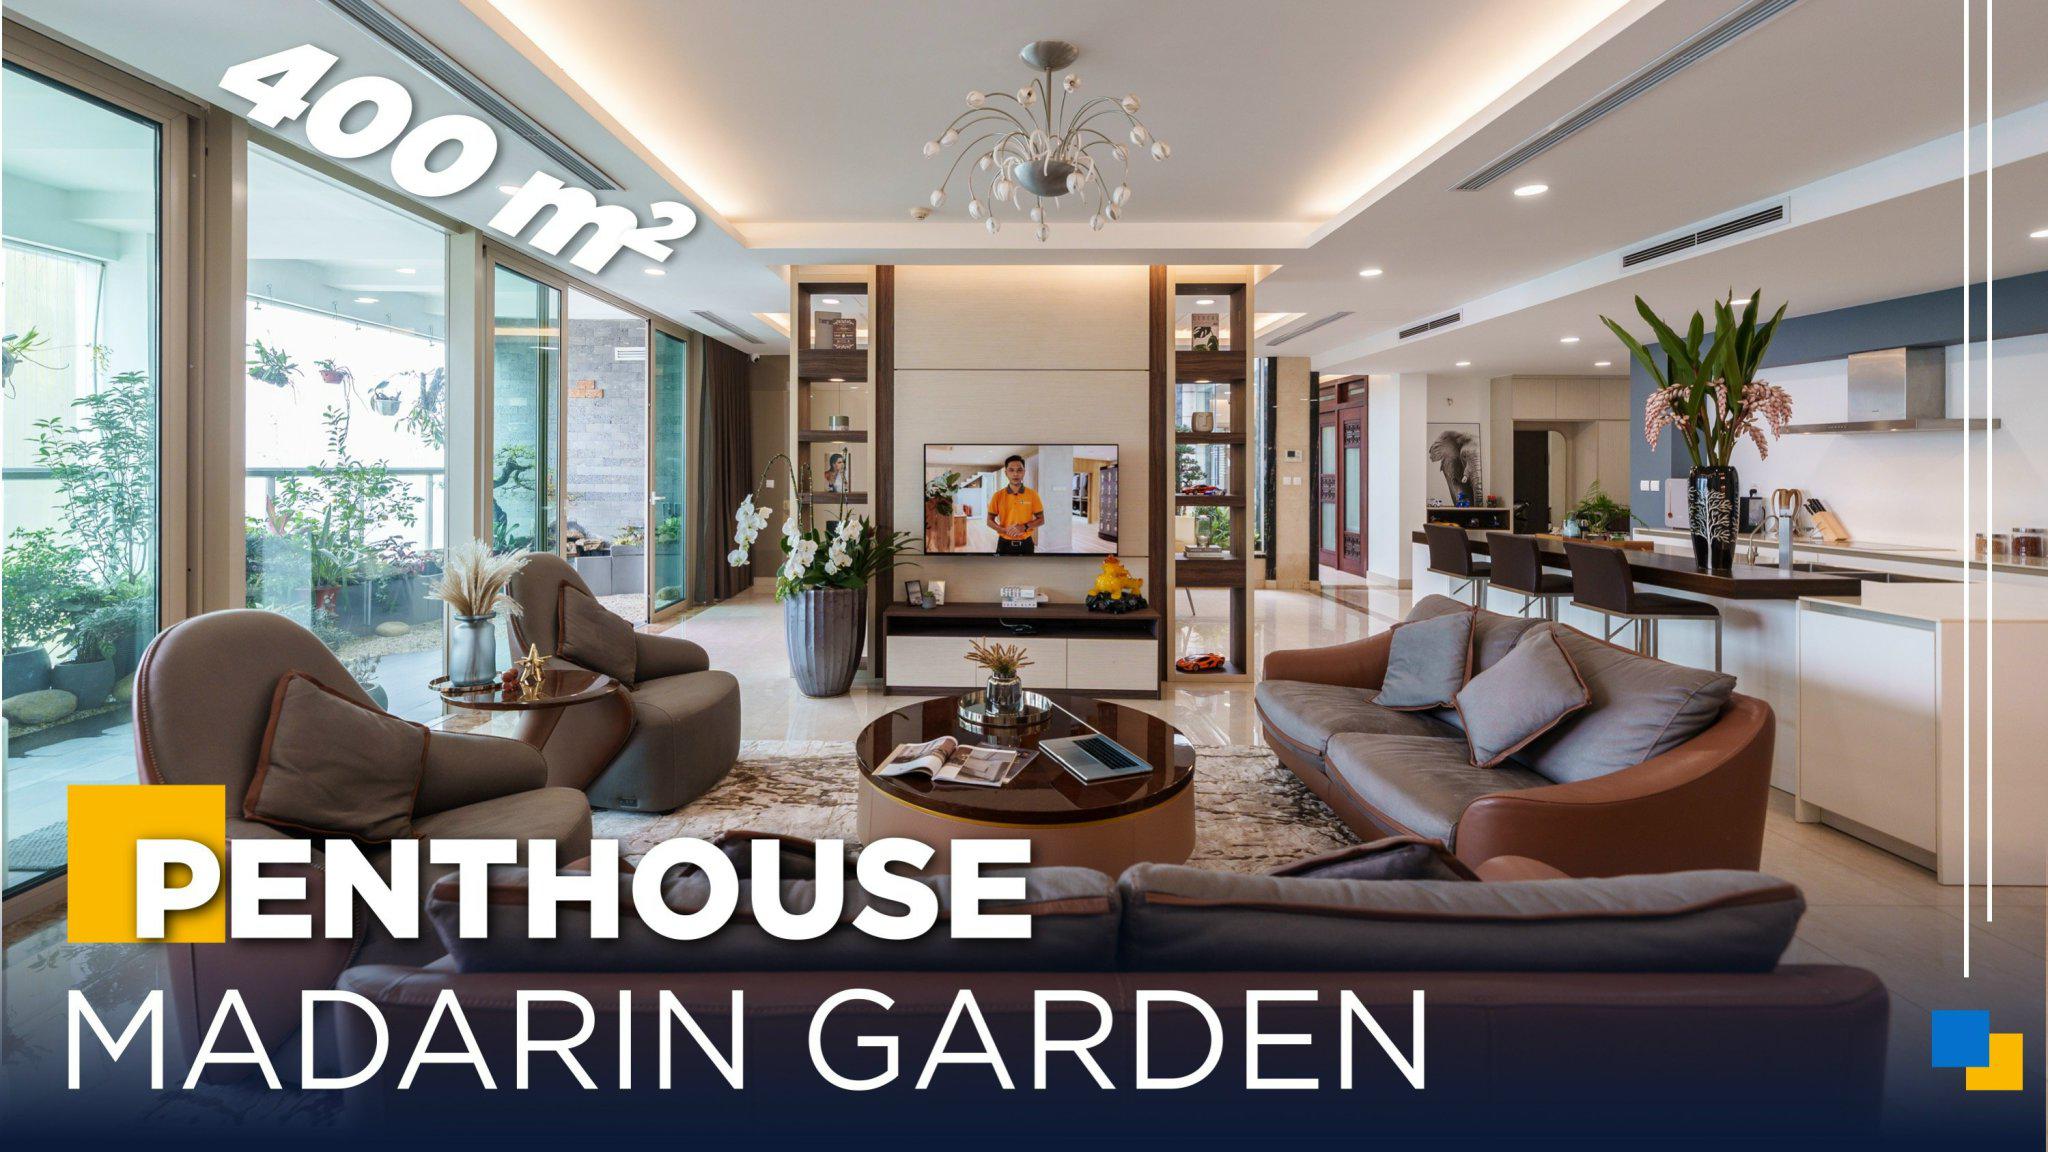 Penthouse 400m2 Madarin Garden Siêu Đẳng Cấp | Gỗ An Cường x Nội Thất 399 